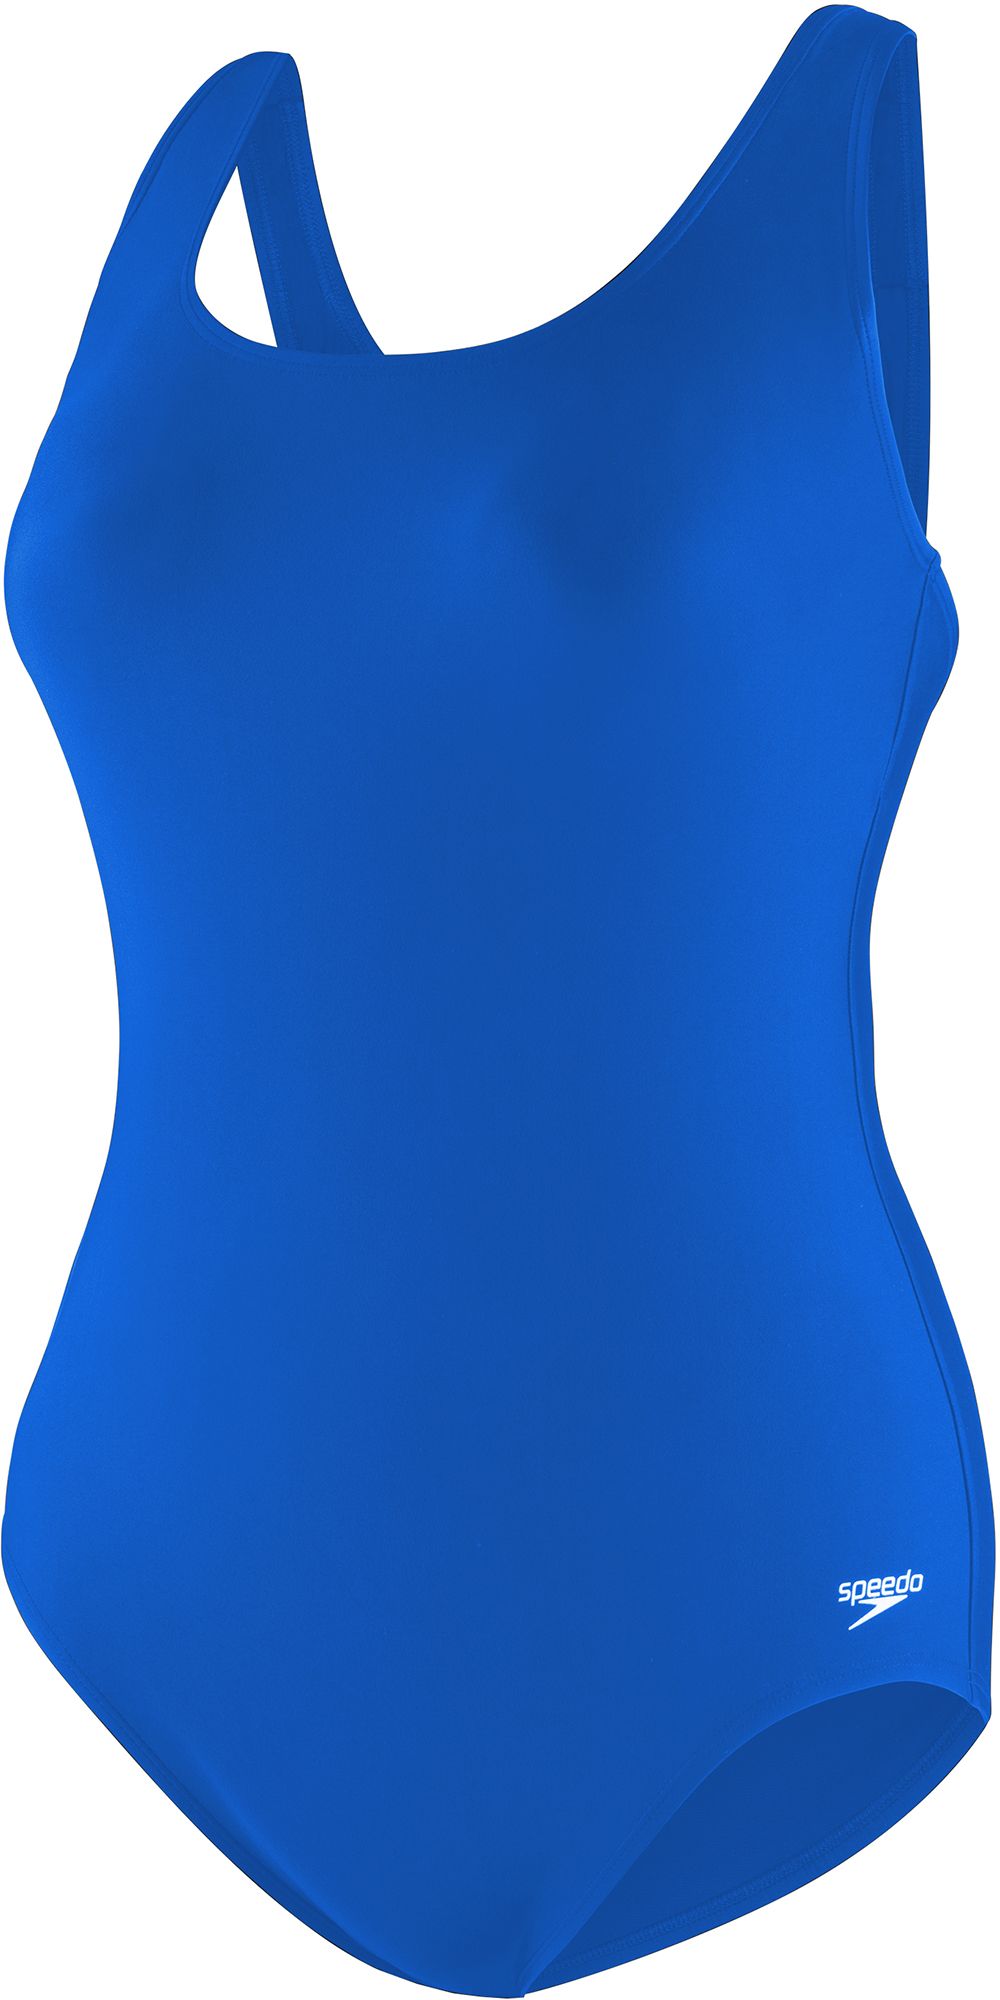 Speedo Womens Shelf Bra Compression One-Piece Swimsuit